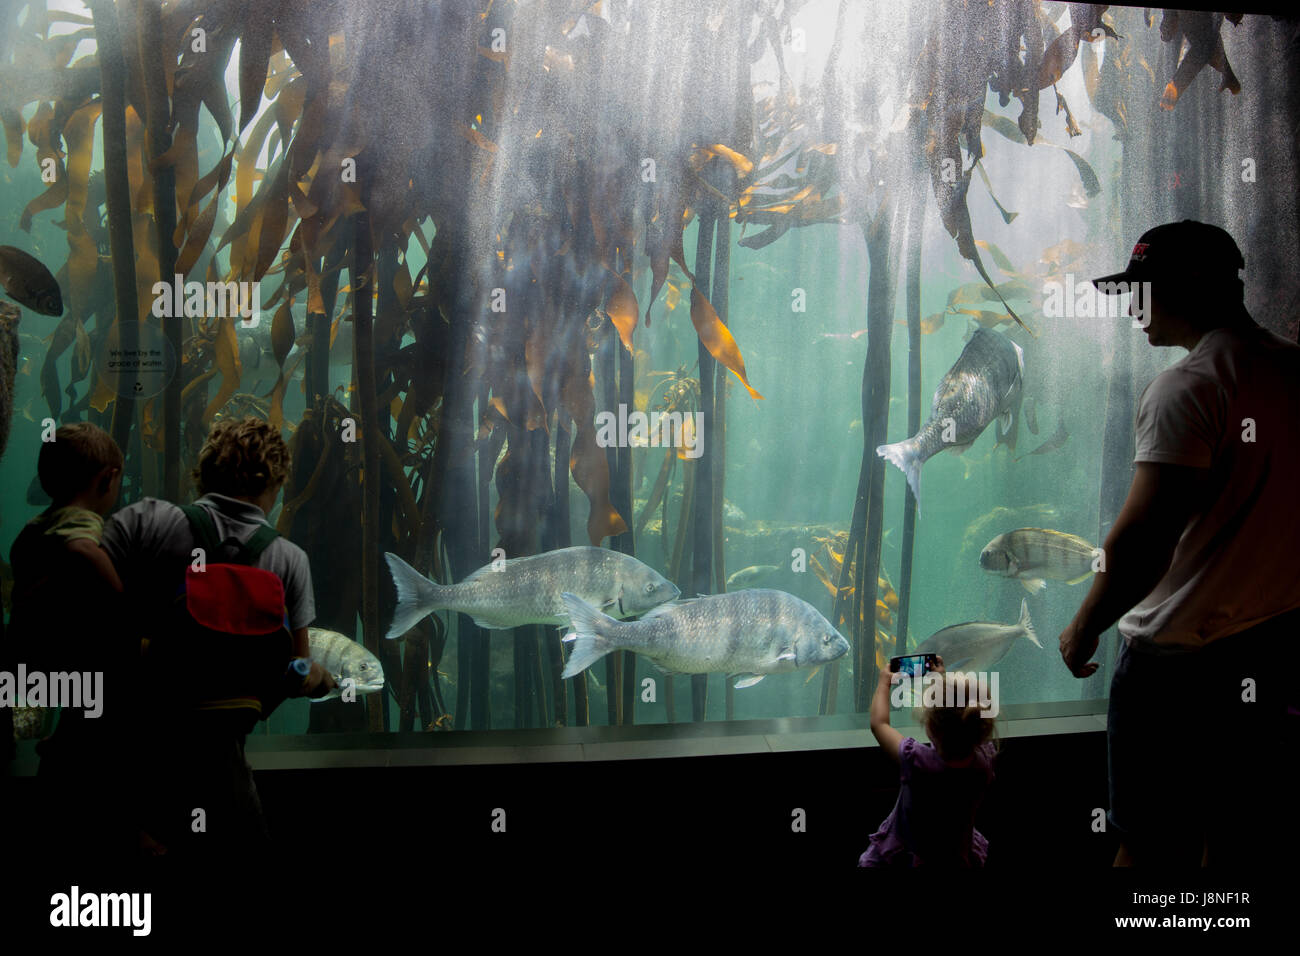 CAPE TOWN, AFRIQUE DU SUD - 1 février, 2015 : Les gens d'admirer les poissons tropicaux dans l'aquarium des deux océans à Cape Town. Banque D'Images